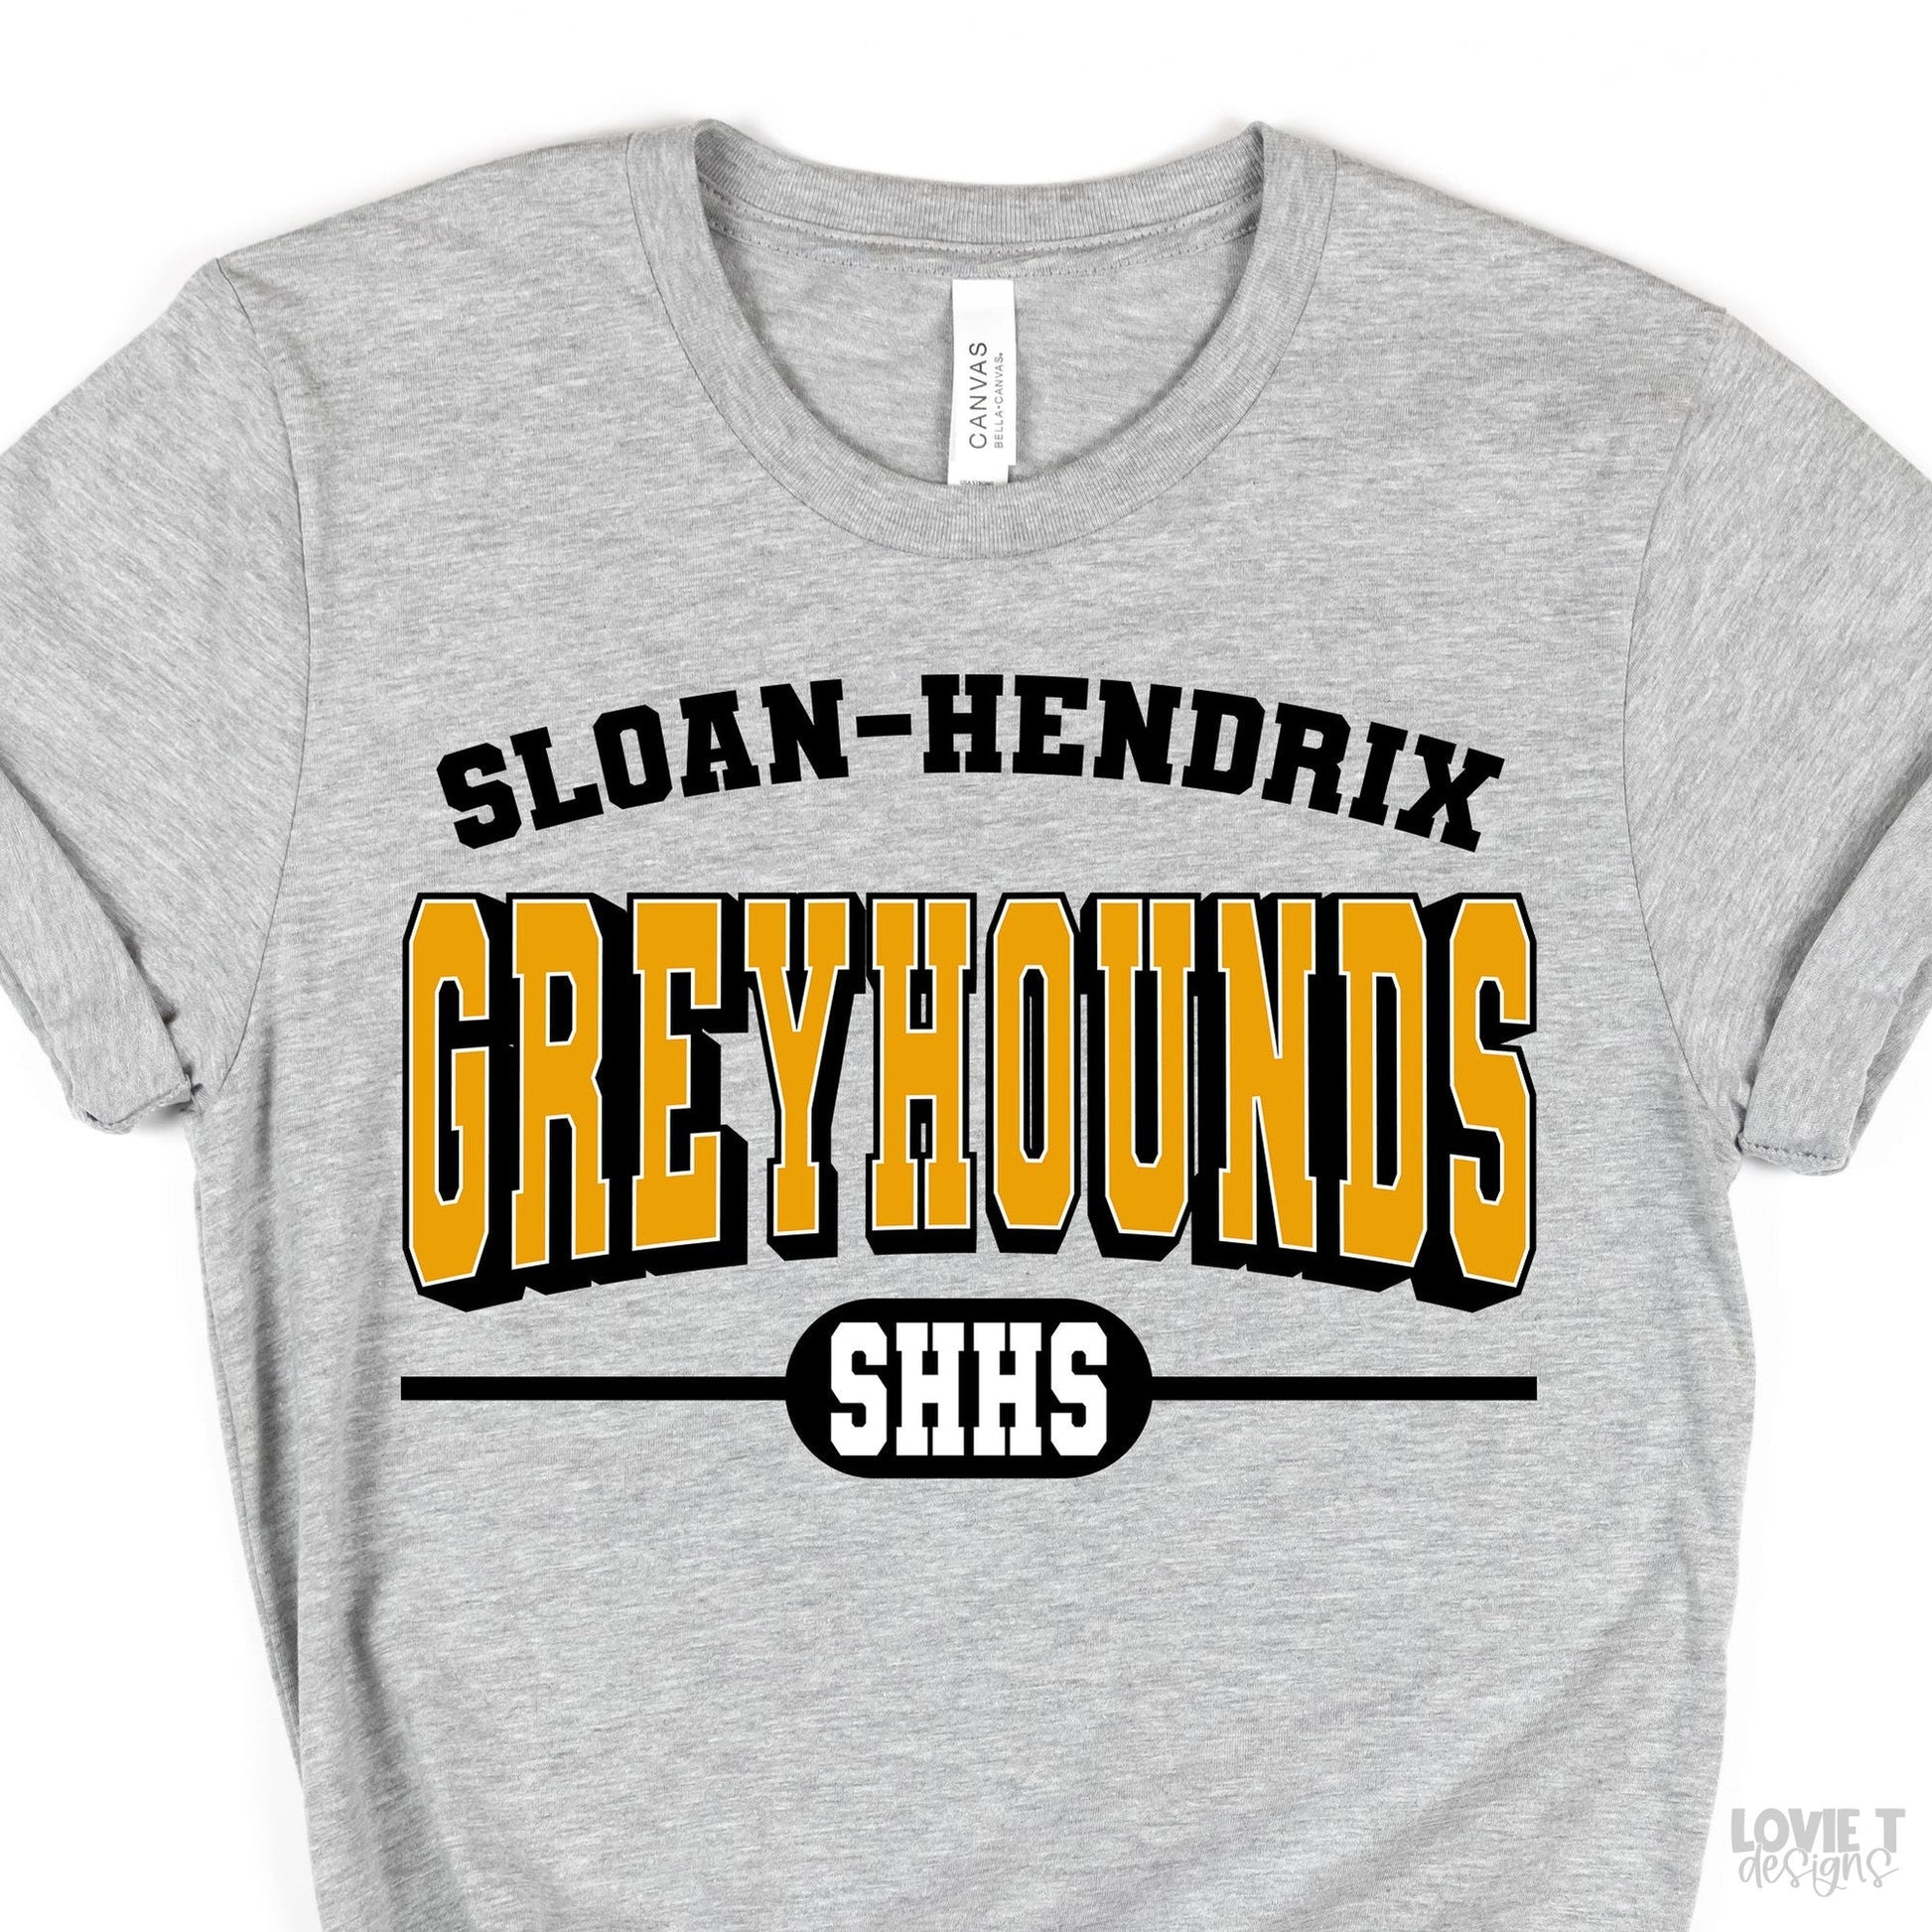 Sloan-Hendrix Greyhounds